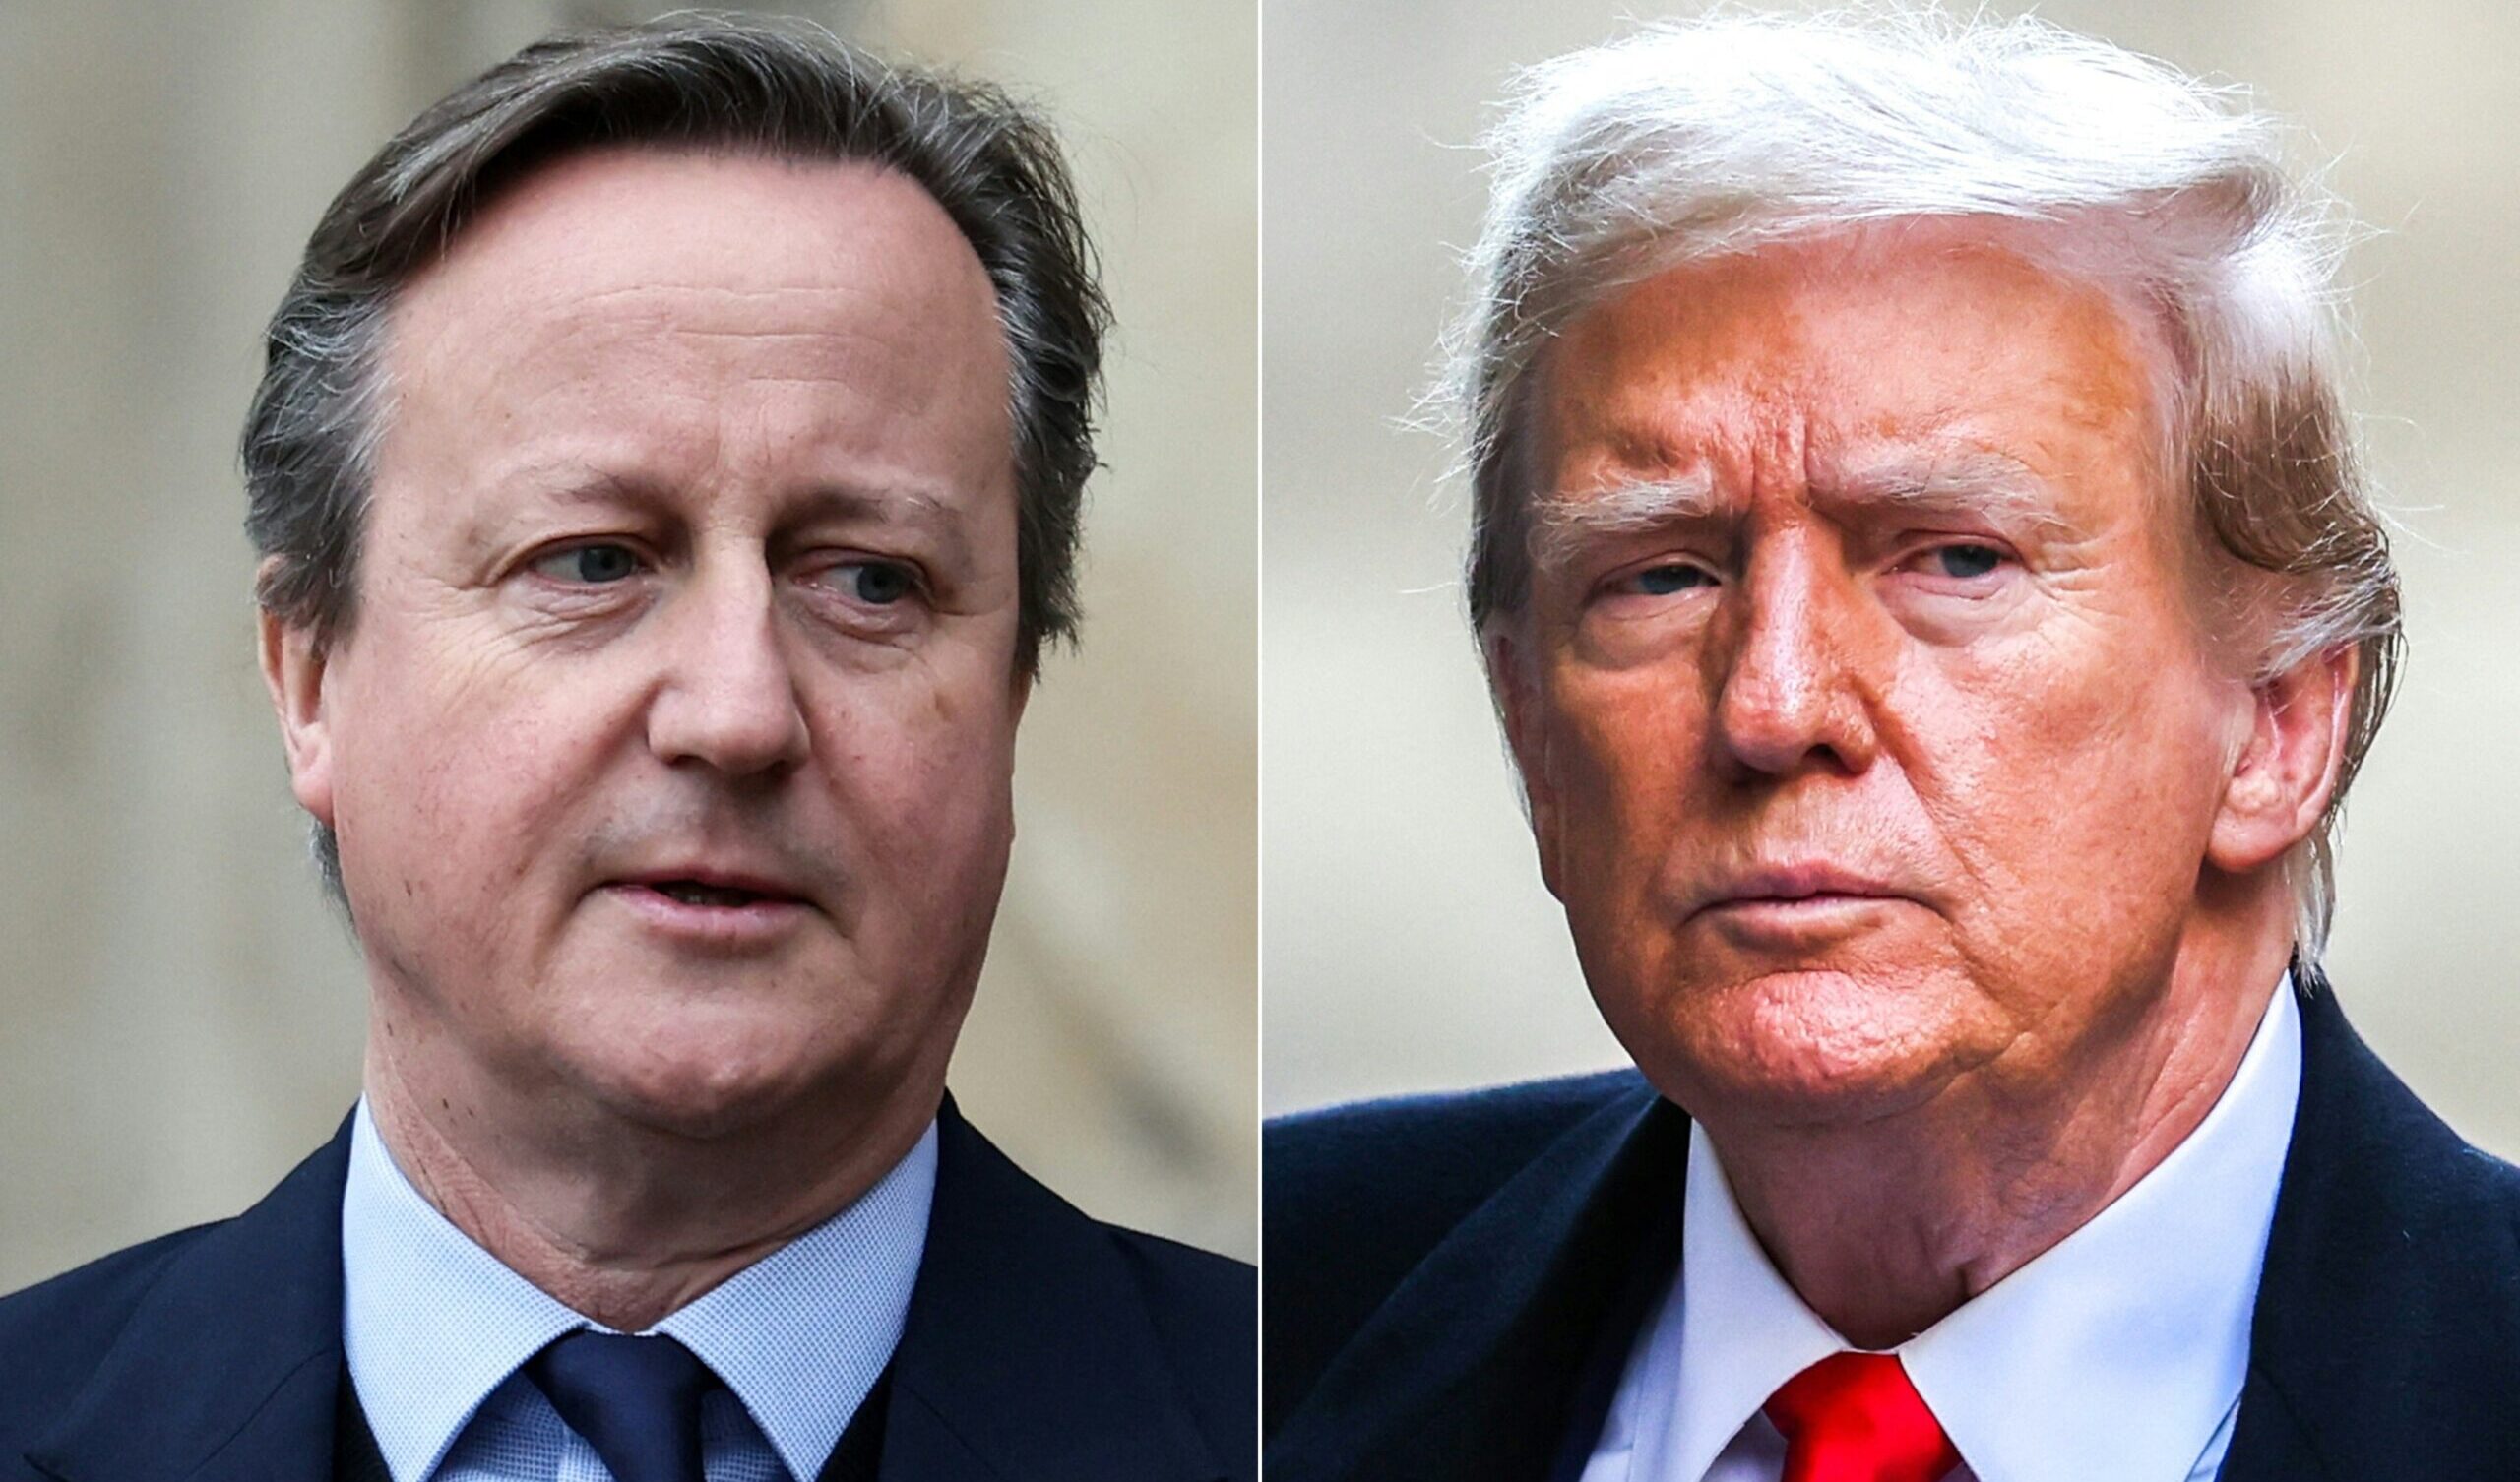 Cameron incontra Trump: un tentativo per convincerlo a non opporsi agli aiuti all'Ucraina